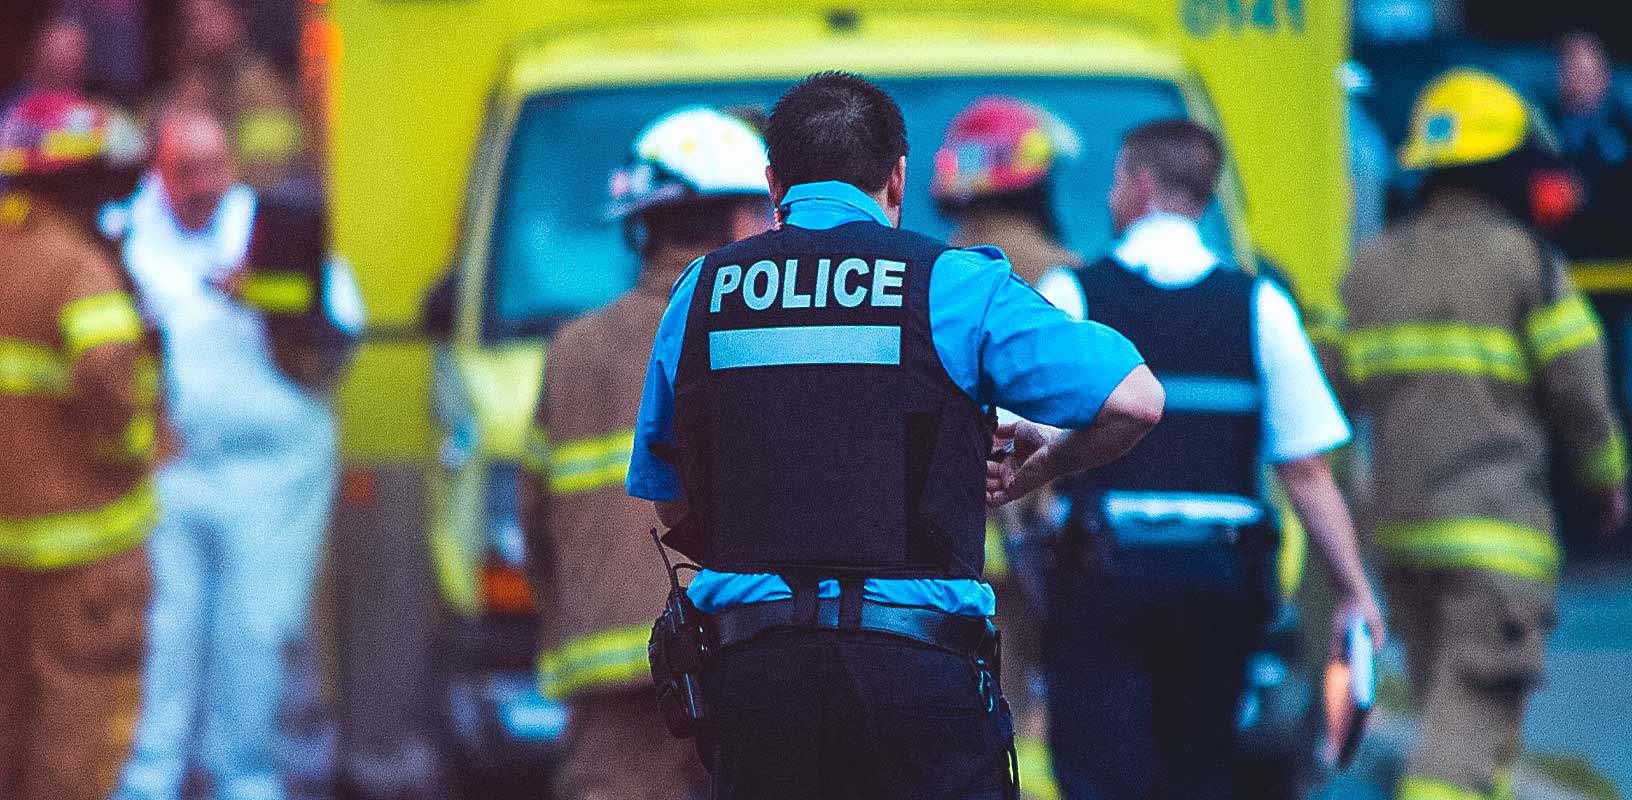 緊急サービス車両での警察の画像